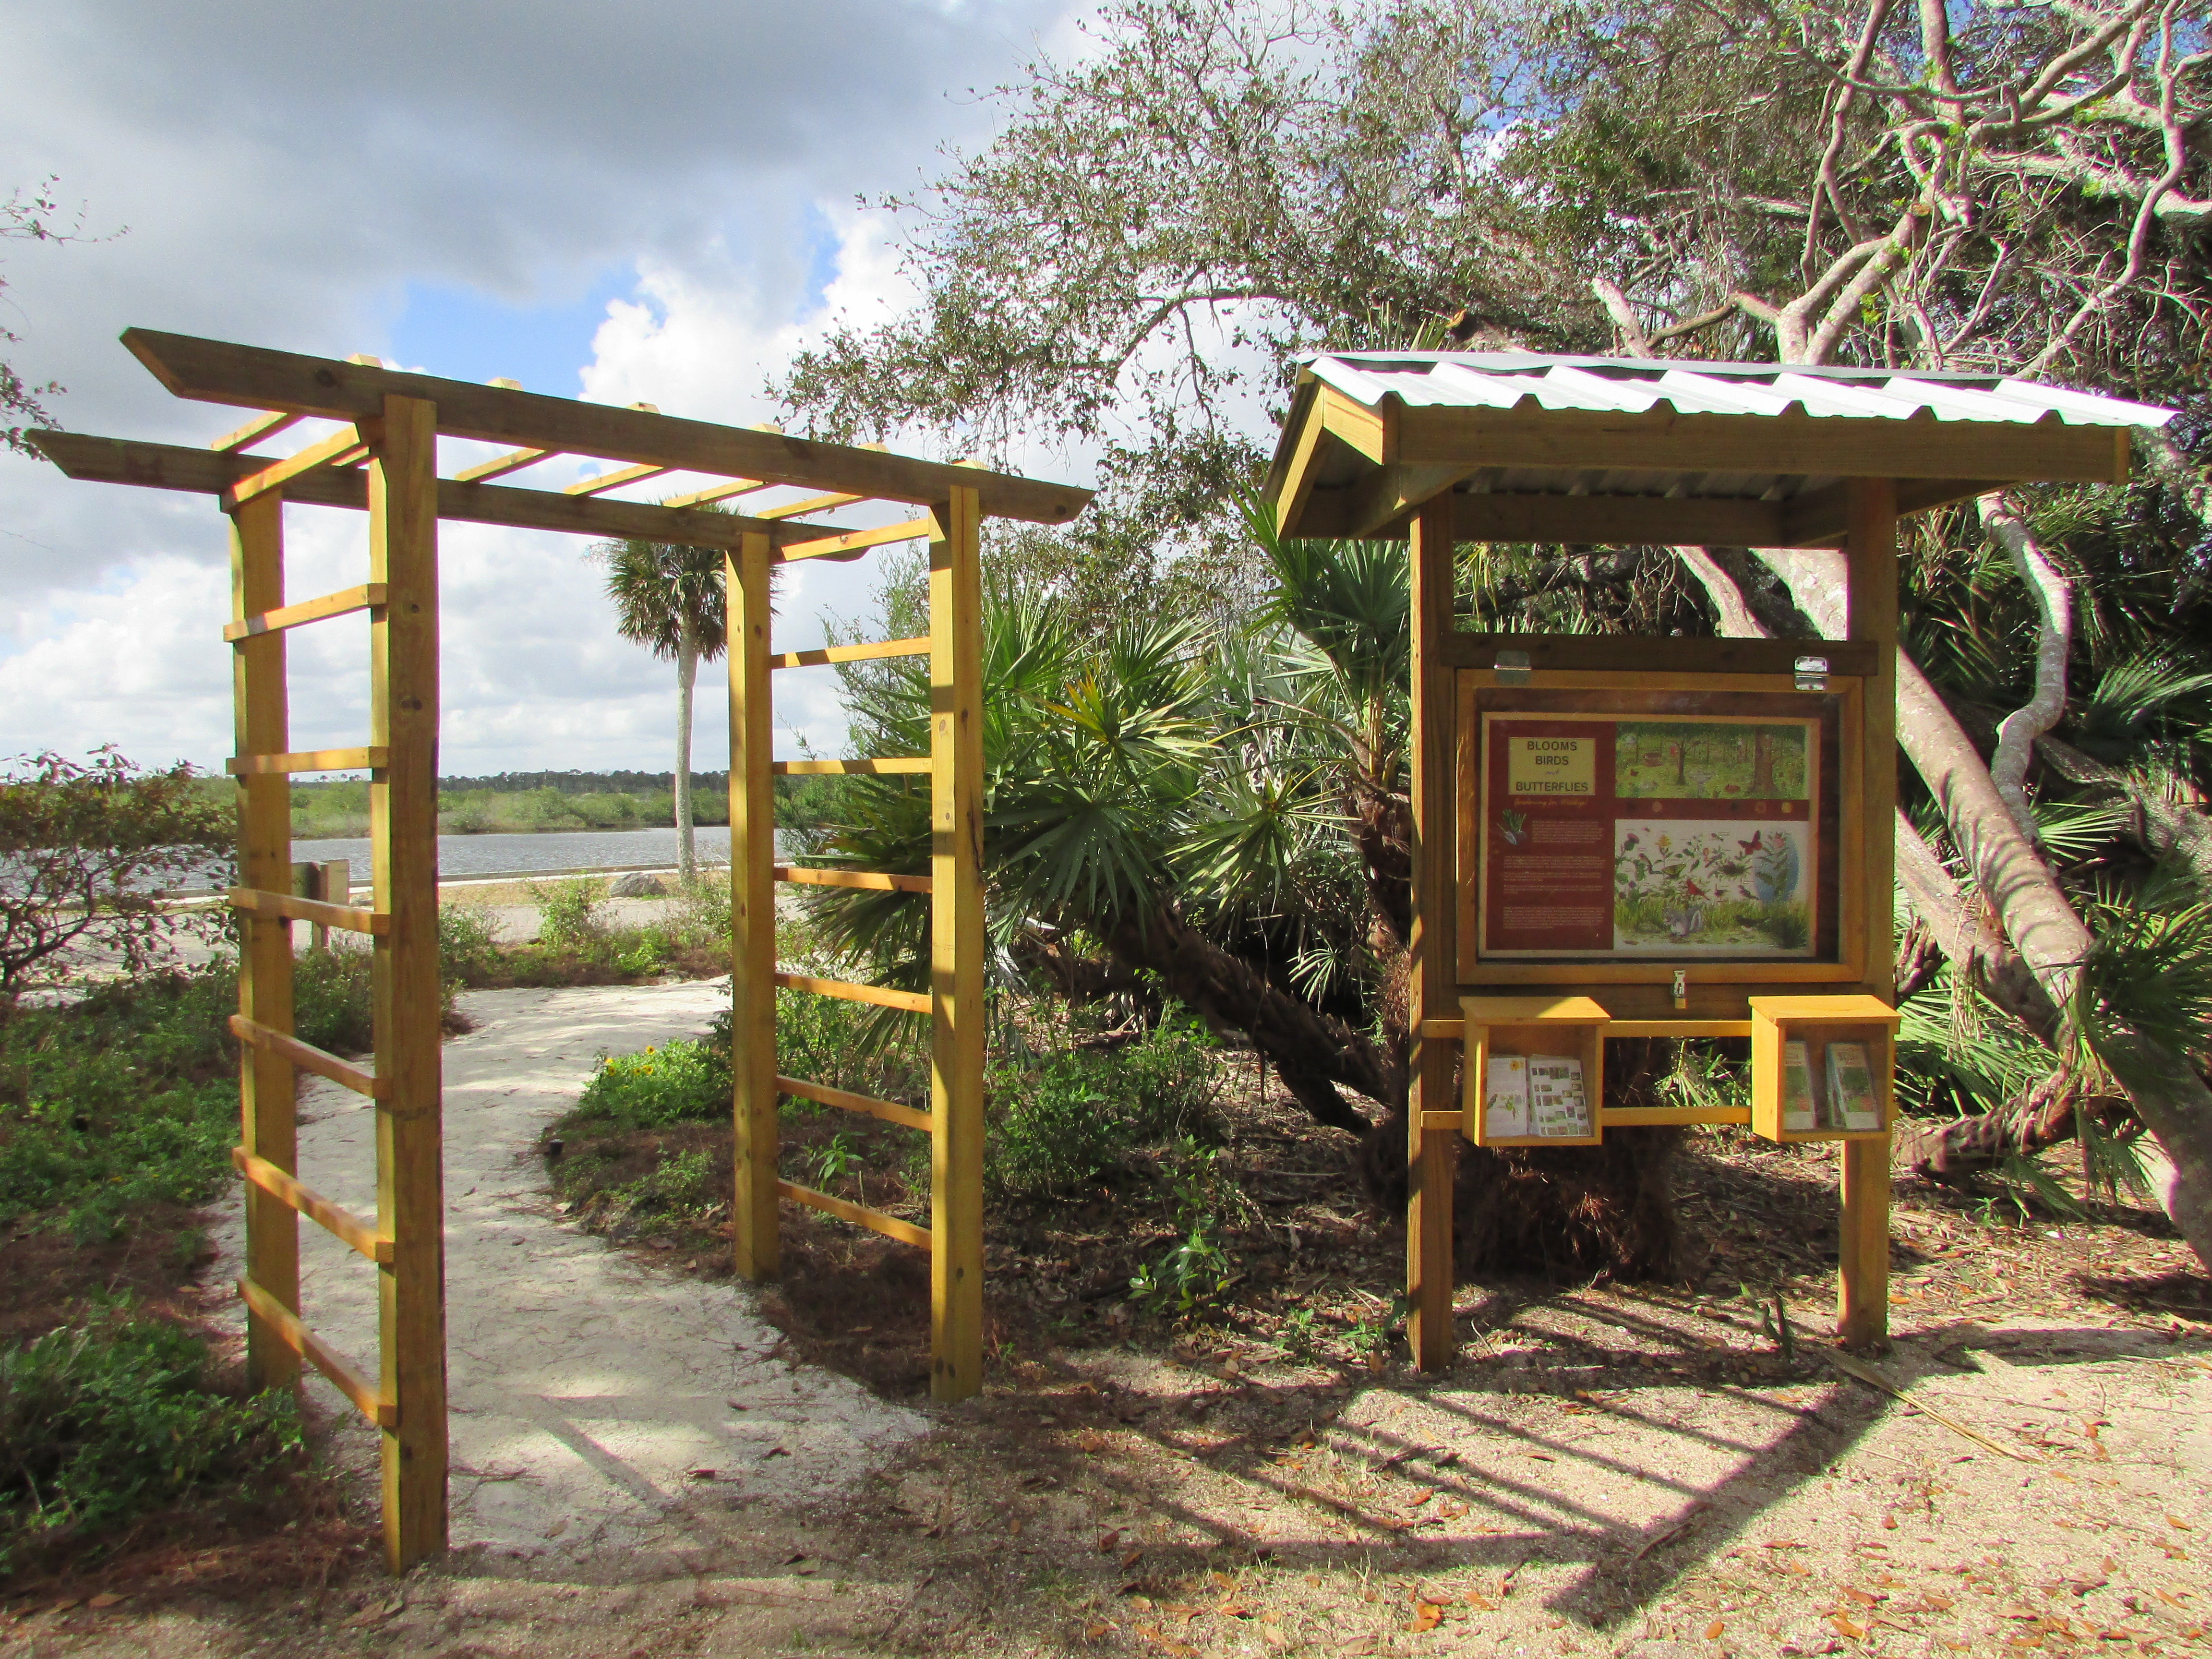 Wooden interpretive kiosk outside of butterfly garden